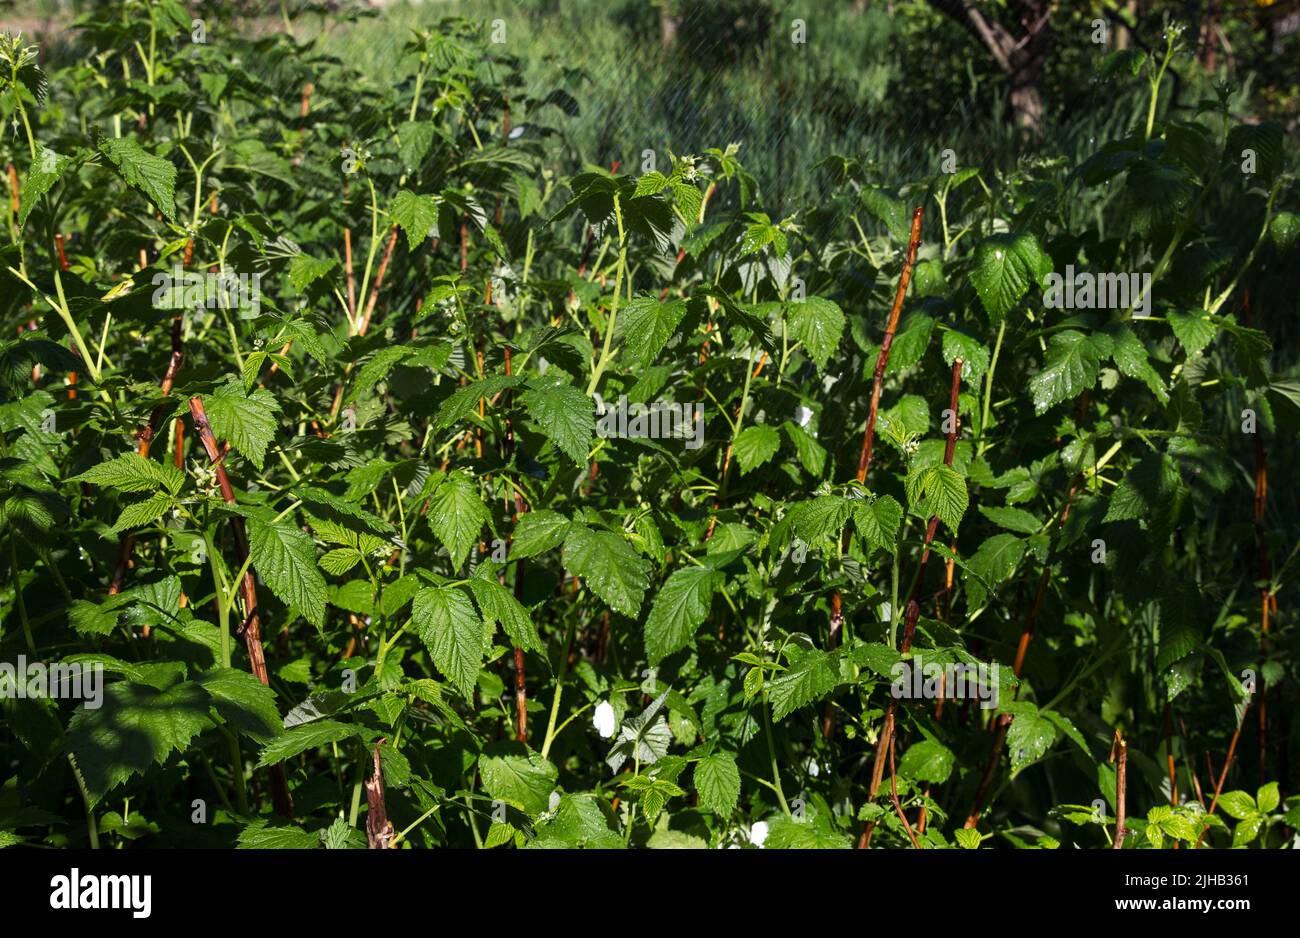 Annaffiatura, irrigazione in giardino di verdi cespugli di lamponi, in estate con clima caldo e secco Foto Stock